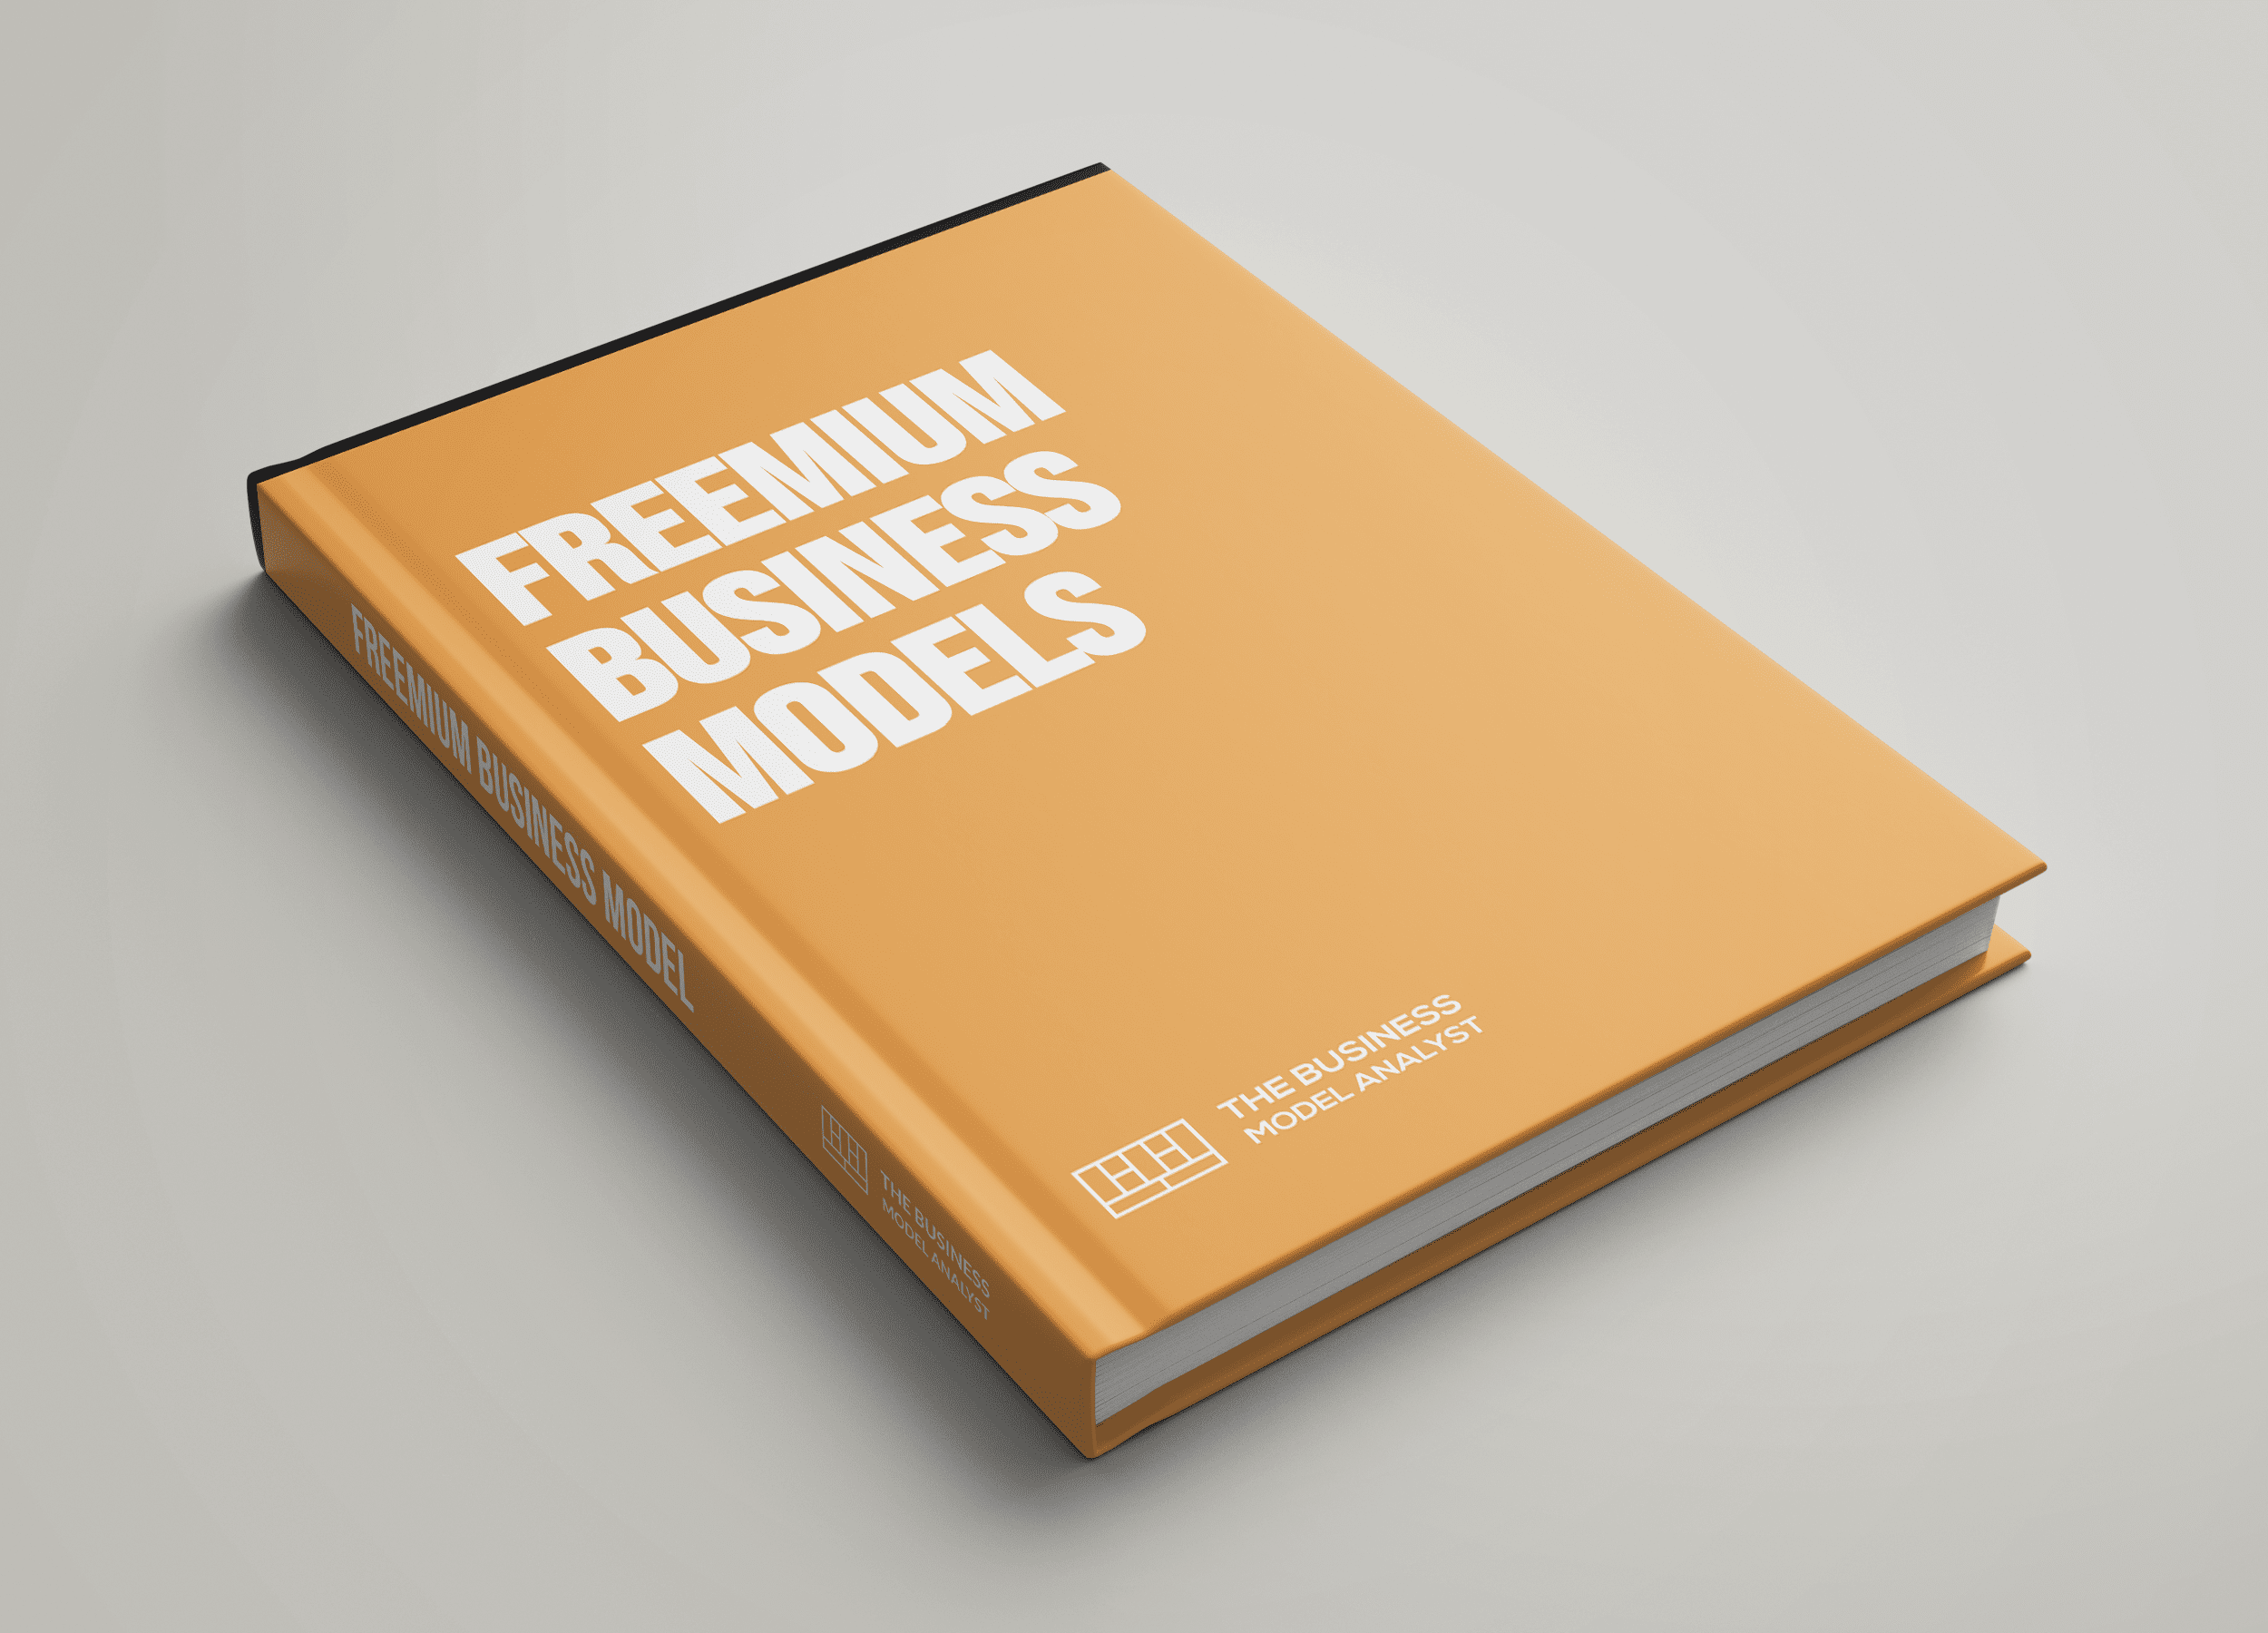 Freemium Business Models Cover